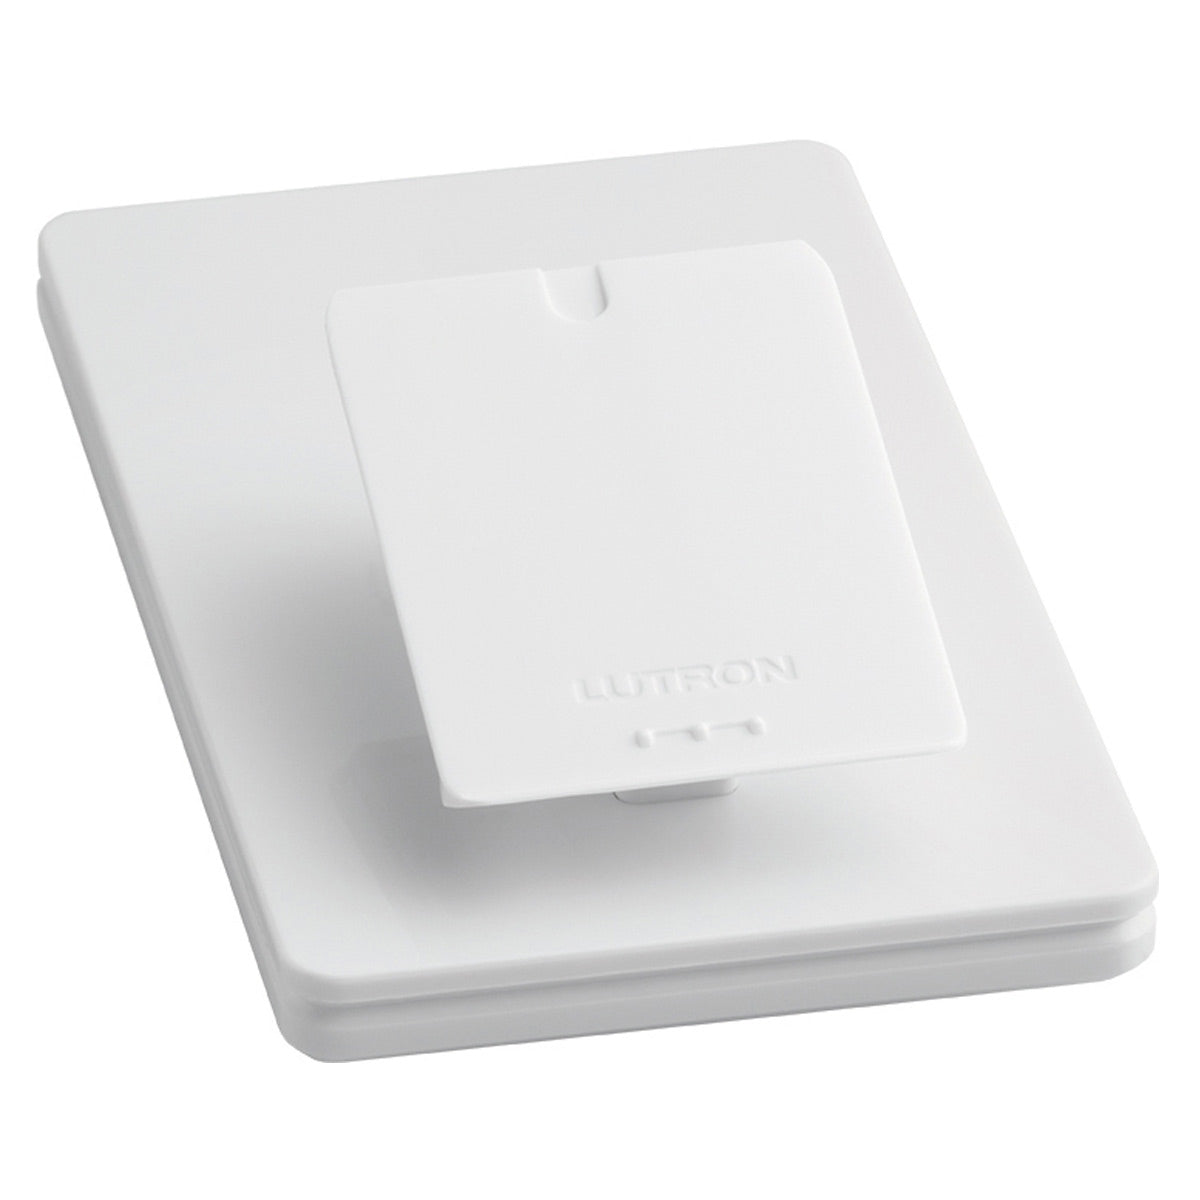 Lutron Pedestal for Caseta Wireless Pico Remote Control (White)